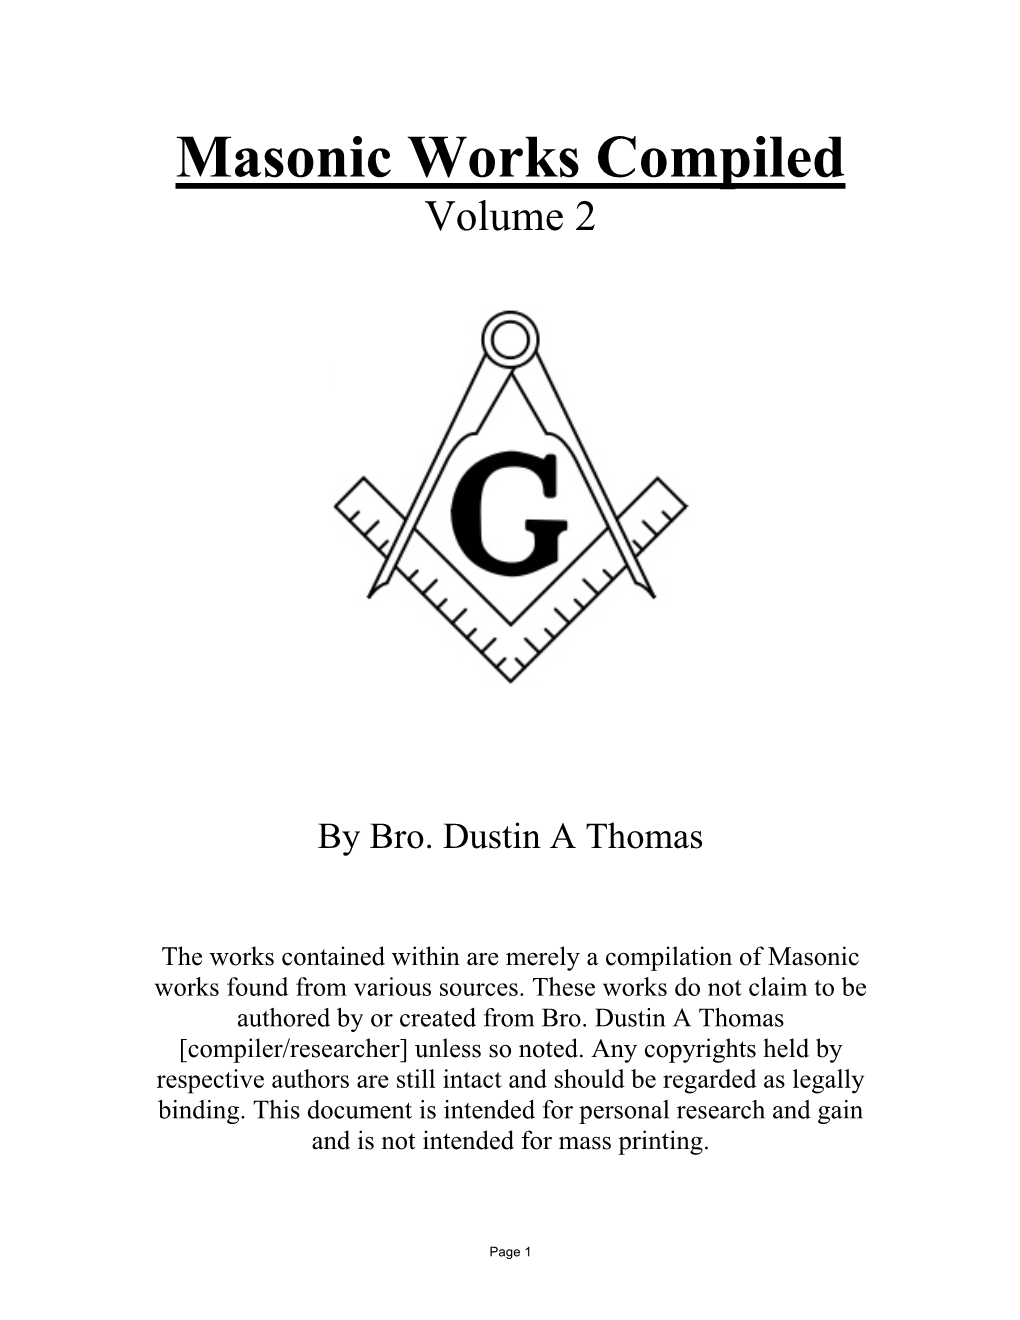 Masonic Works Compiled Volume 2